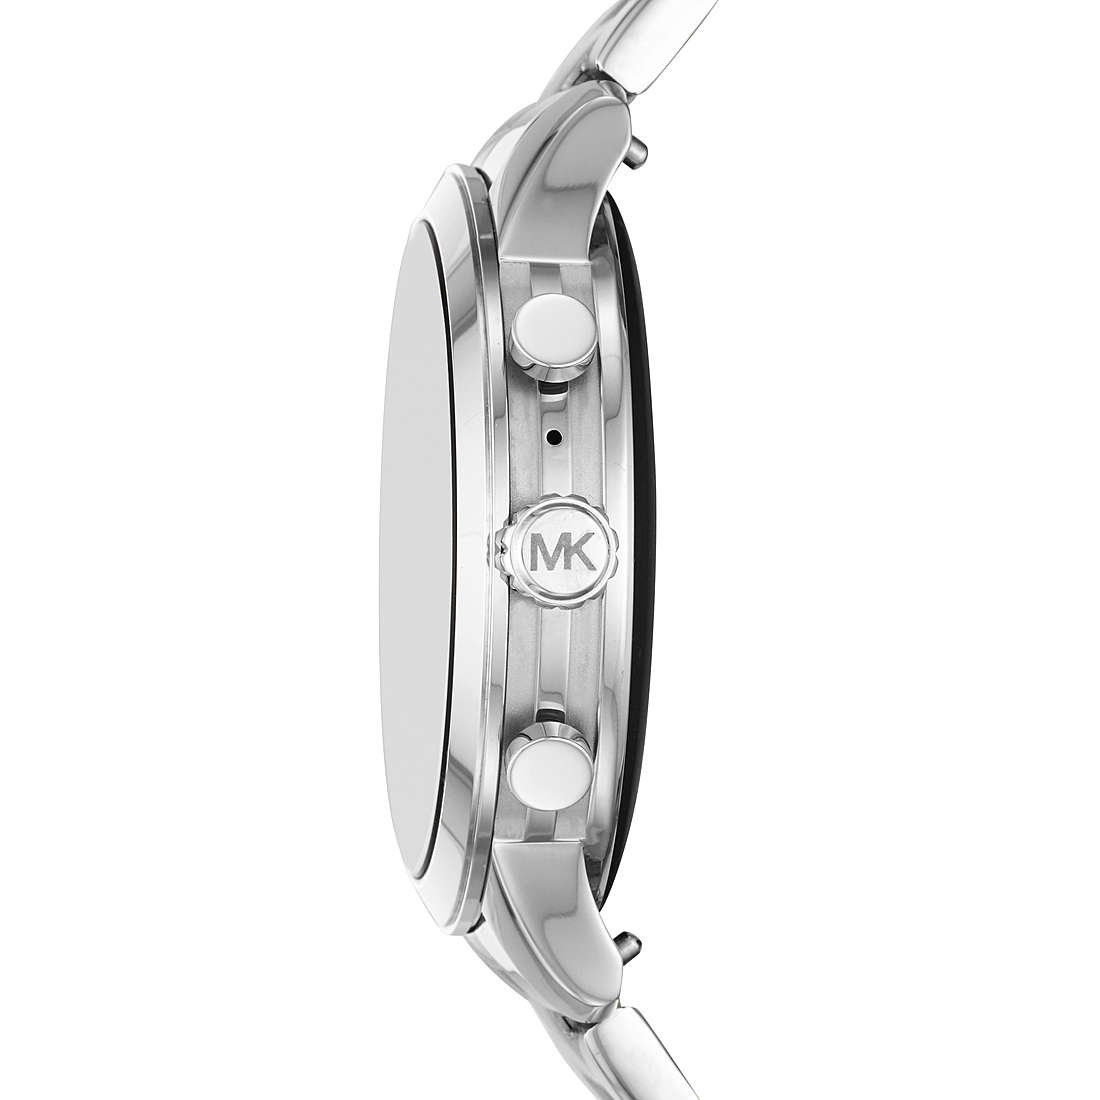 orologio Smartwatch donna Michael Kors Runway - MKT5044 MKT5044